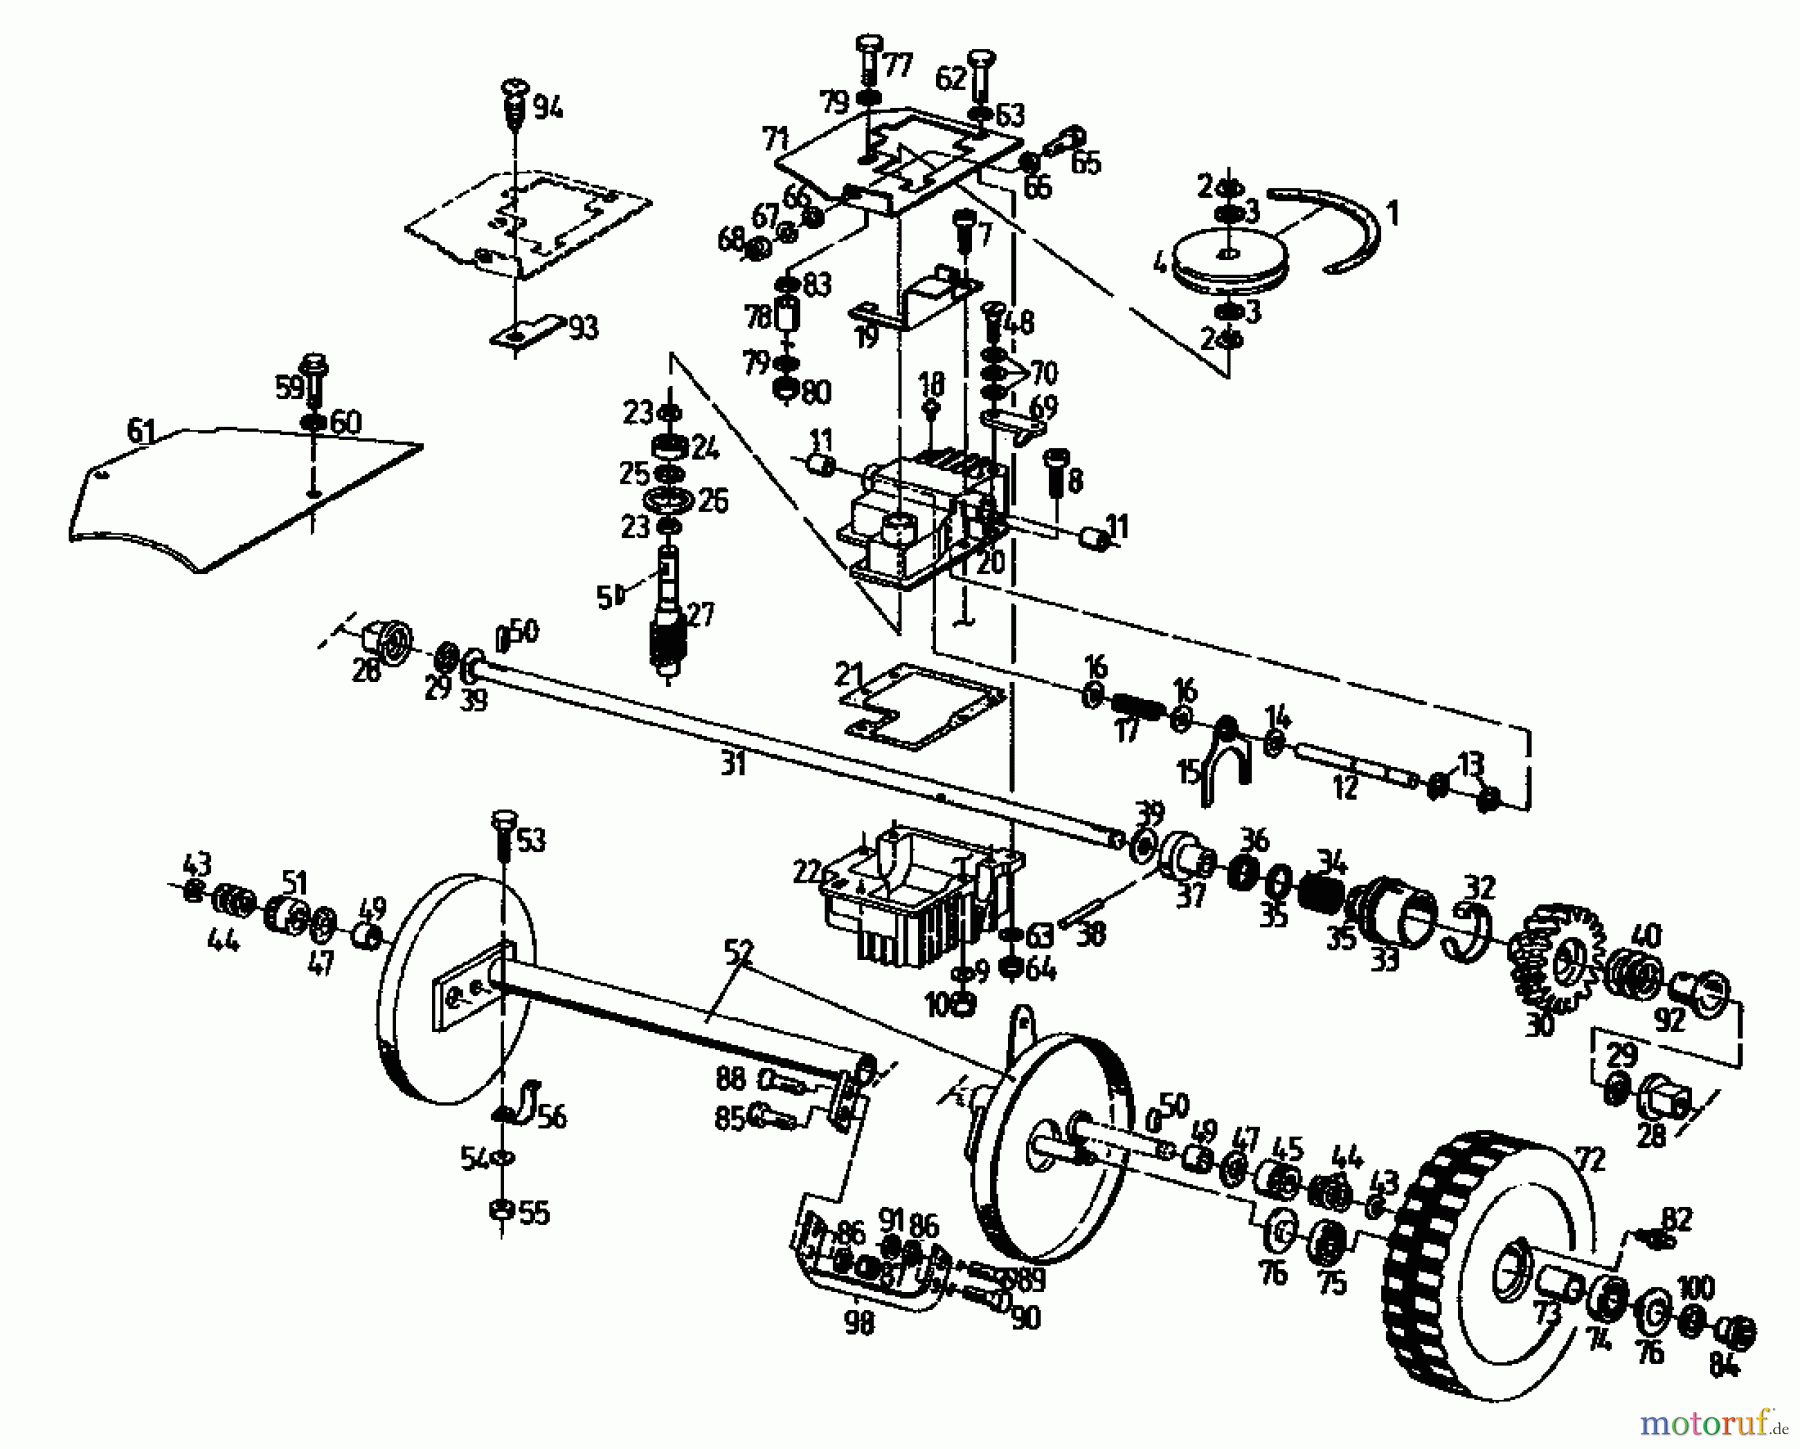  Gutbrod Petrol mower self propelled MH 534 PR 04017.03  (1992) Gearbox, Wheels